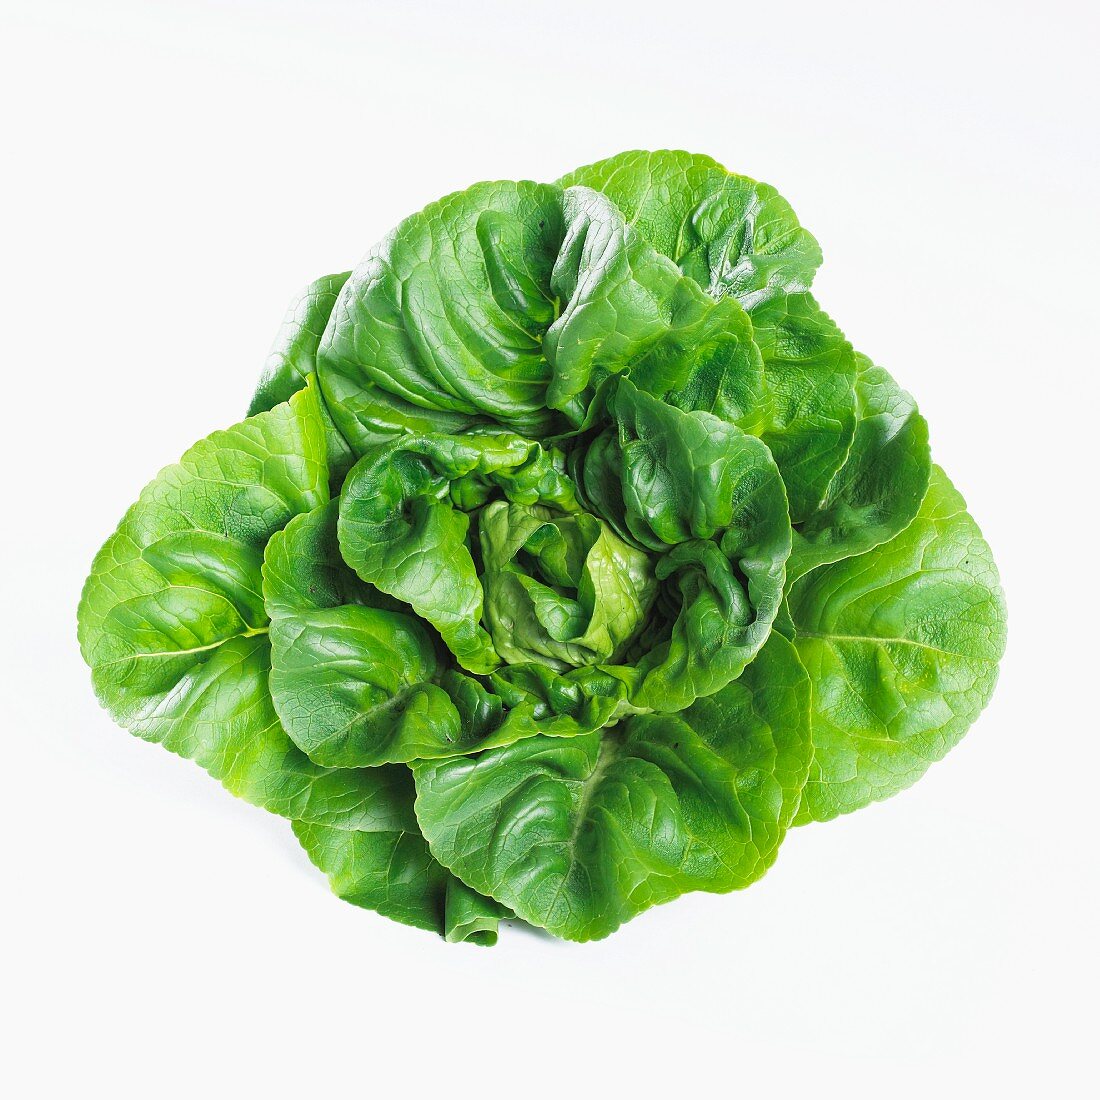 Cos lettuce (lactuca sativa var. longifolia)